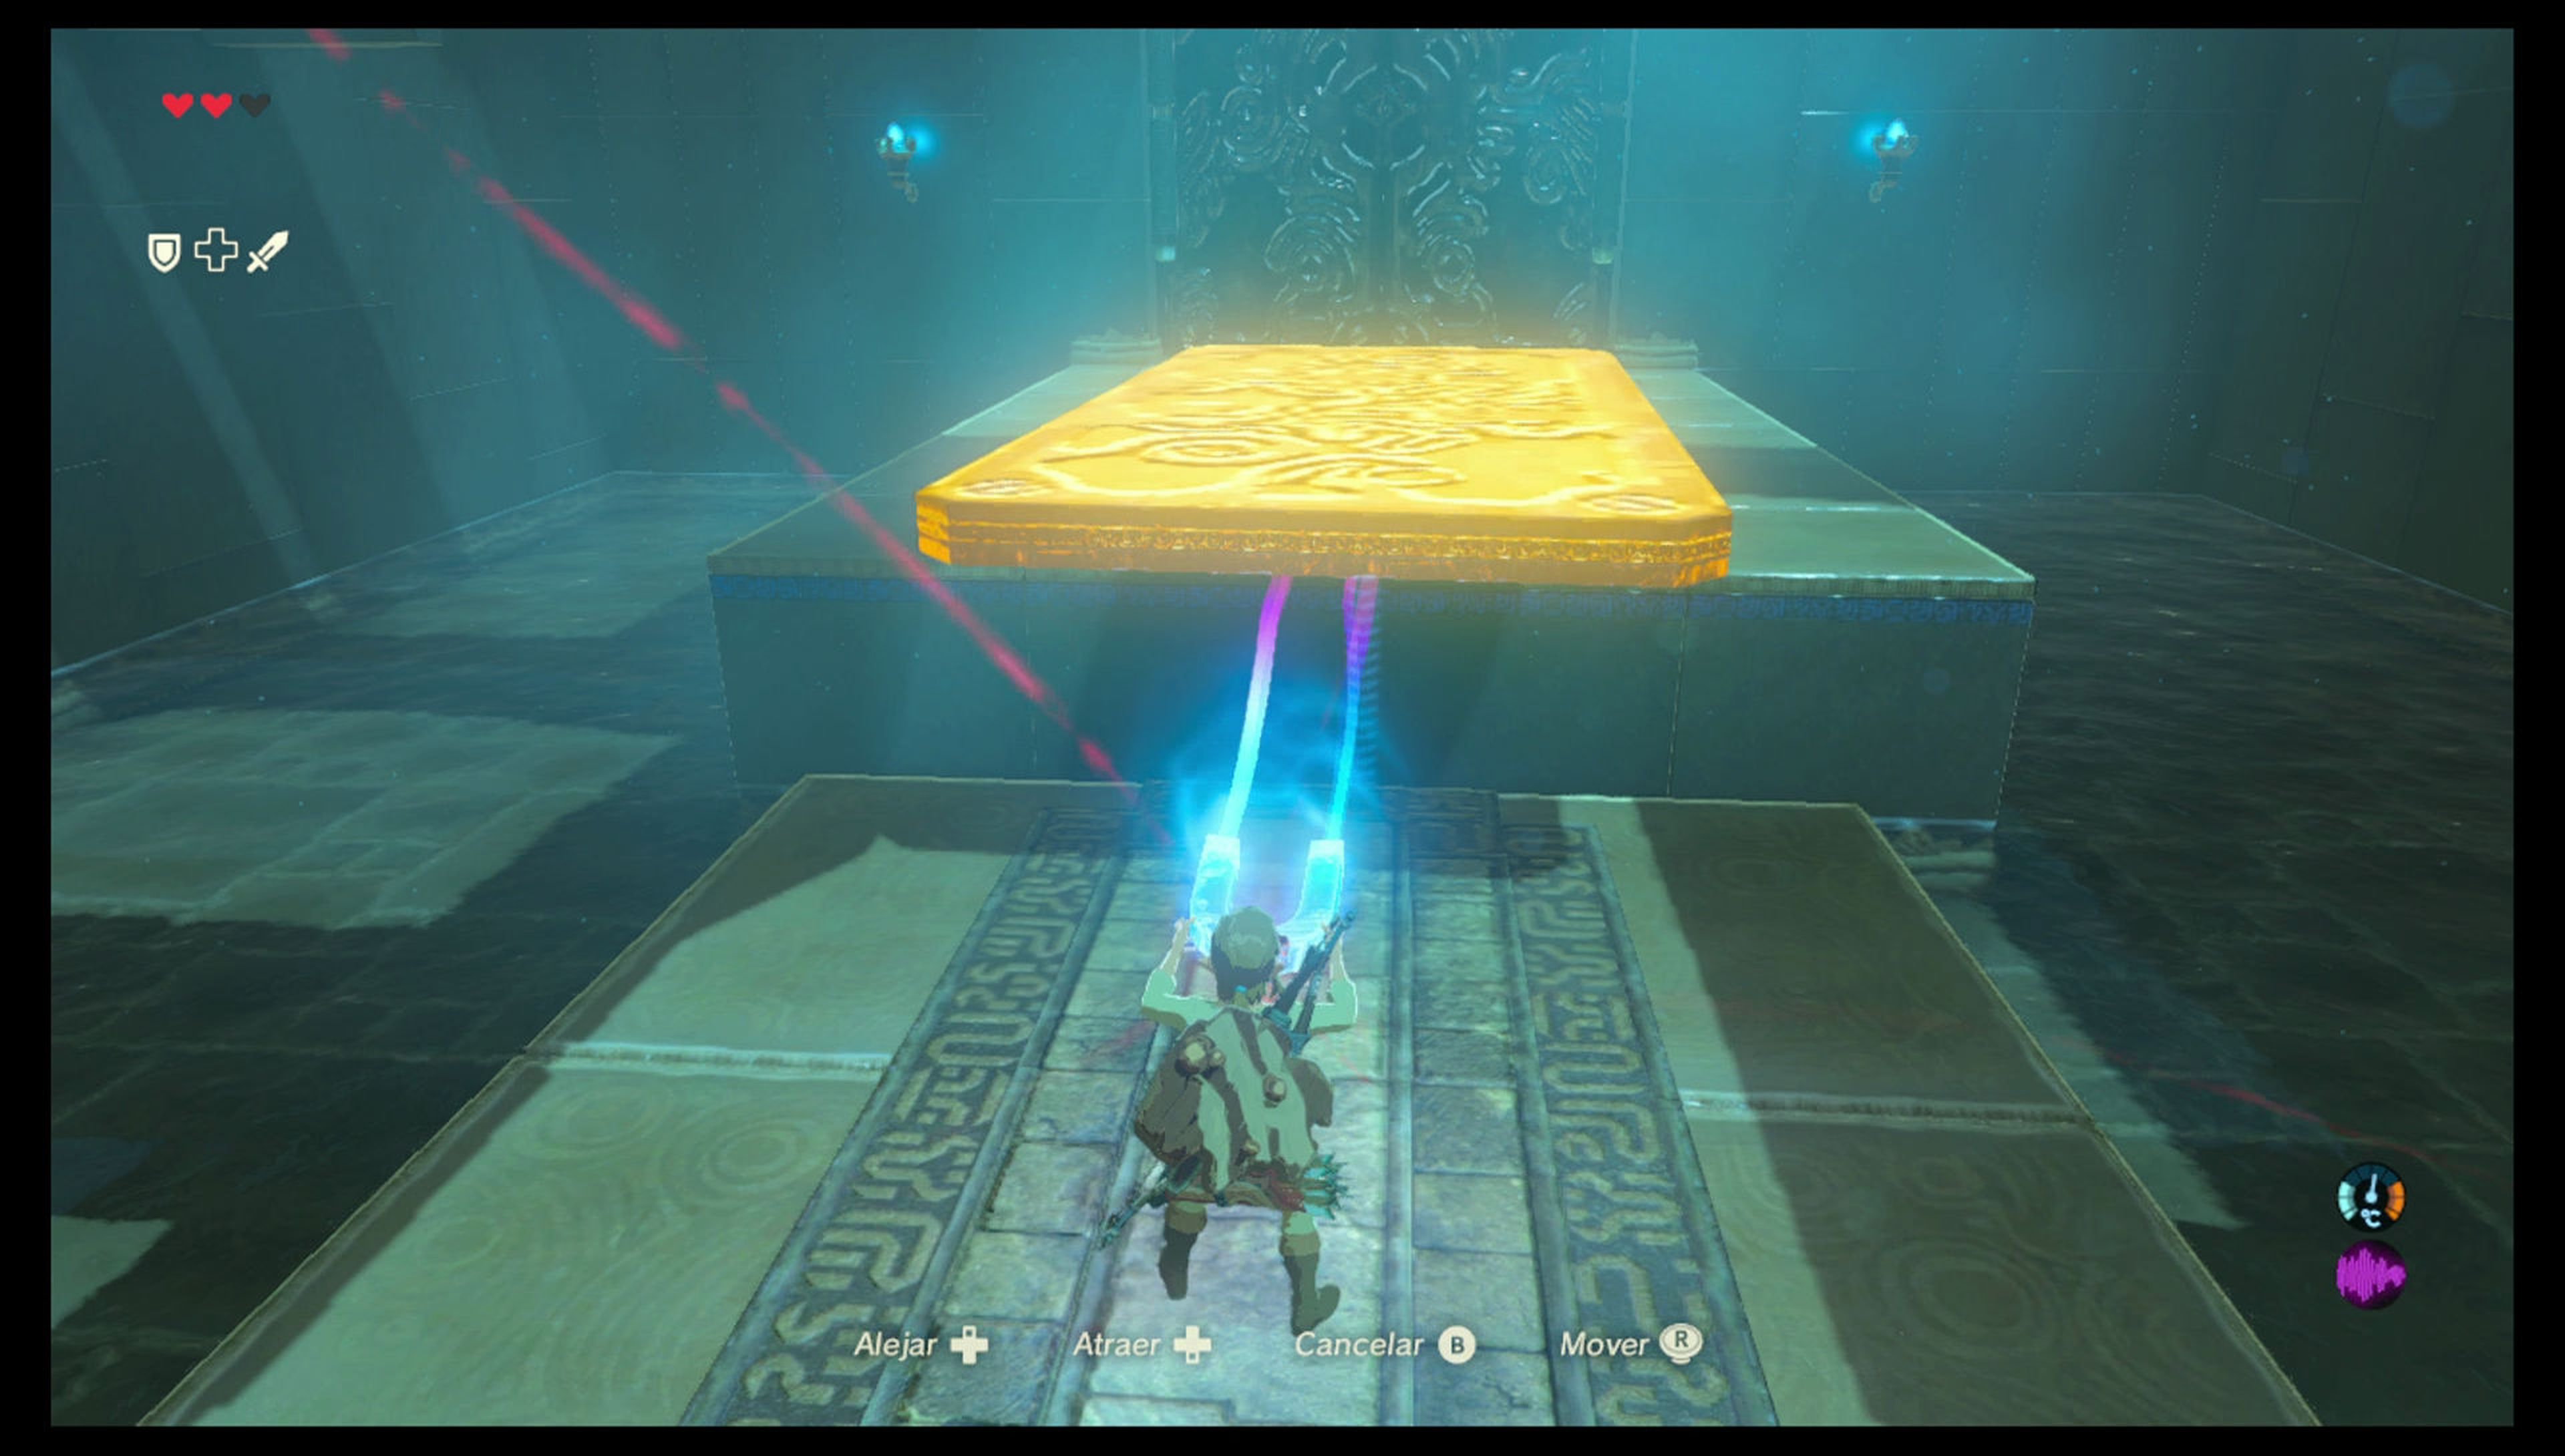 The Legend of Zelda Breath of the Wild Wii U